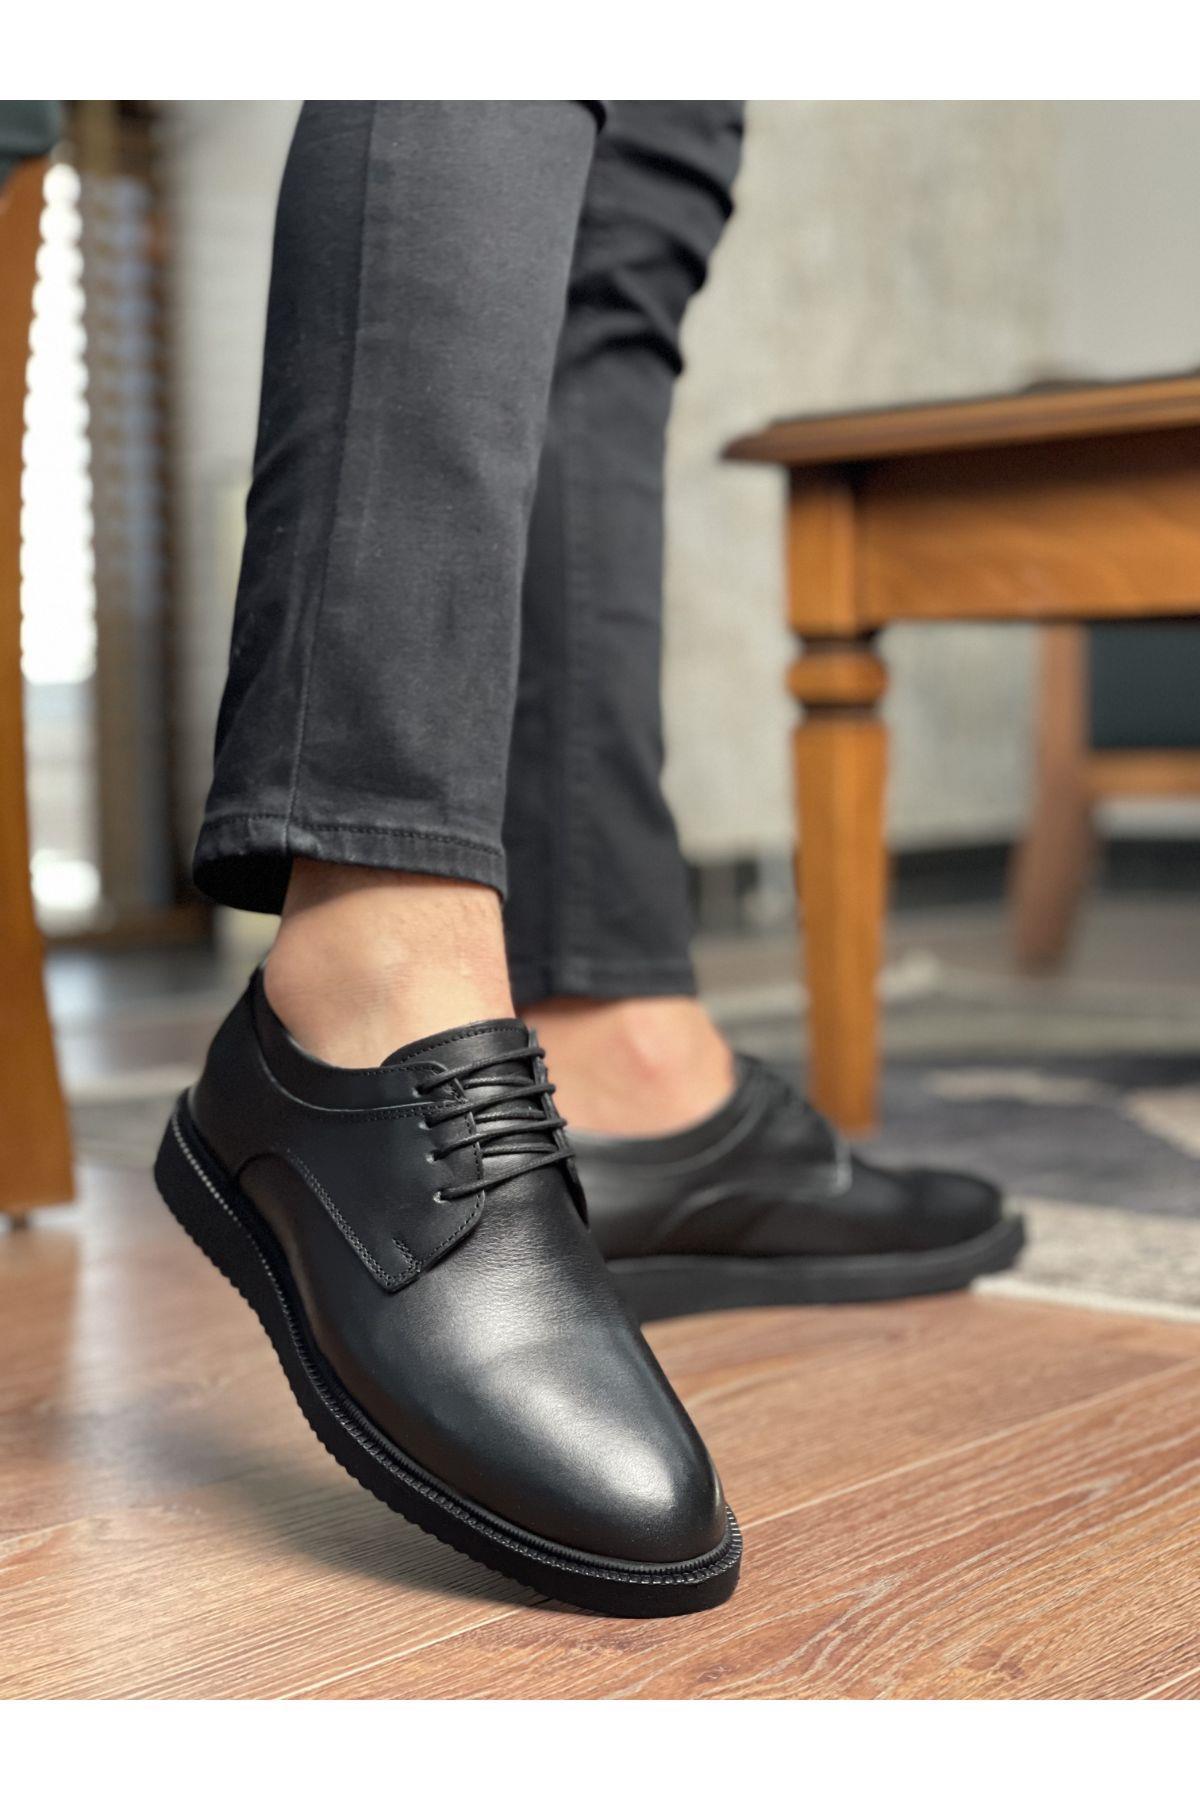 Muggo Marcel Garantili Erkek Günlük Klasik Hakiki Deri Casual Ayakkabı